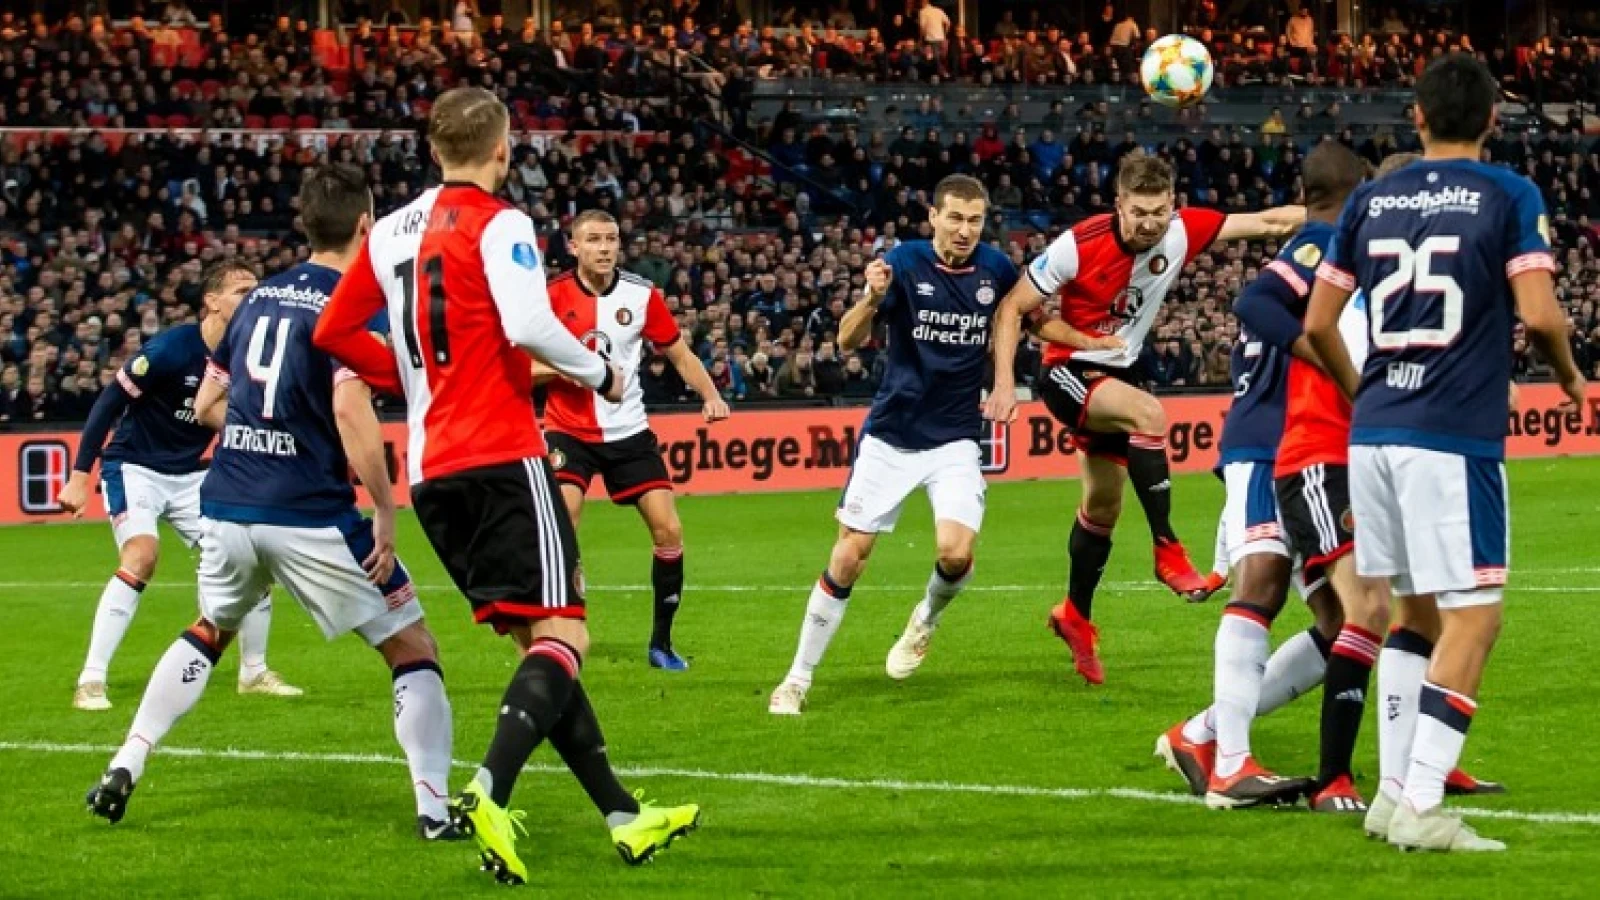 'Als je naar de intentie kijkt van beide ploegen, dan heeft Feyenoord dikverdiend gewonnen'